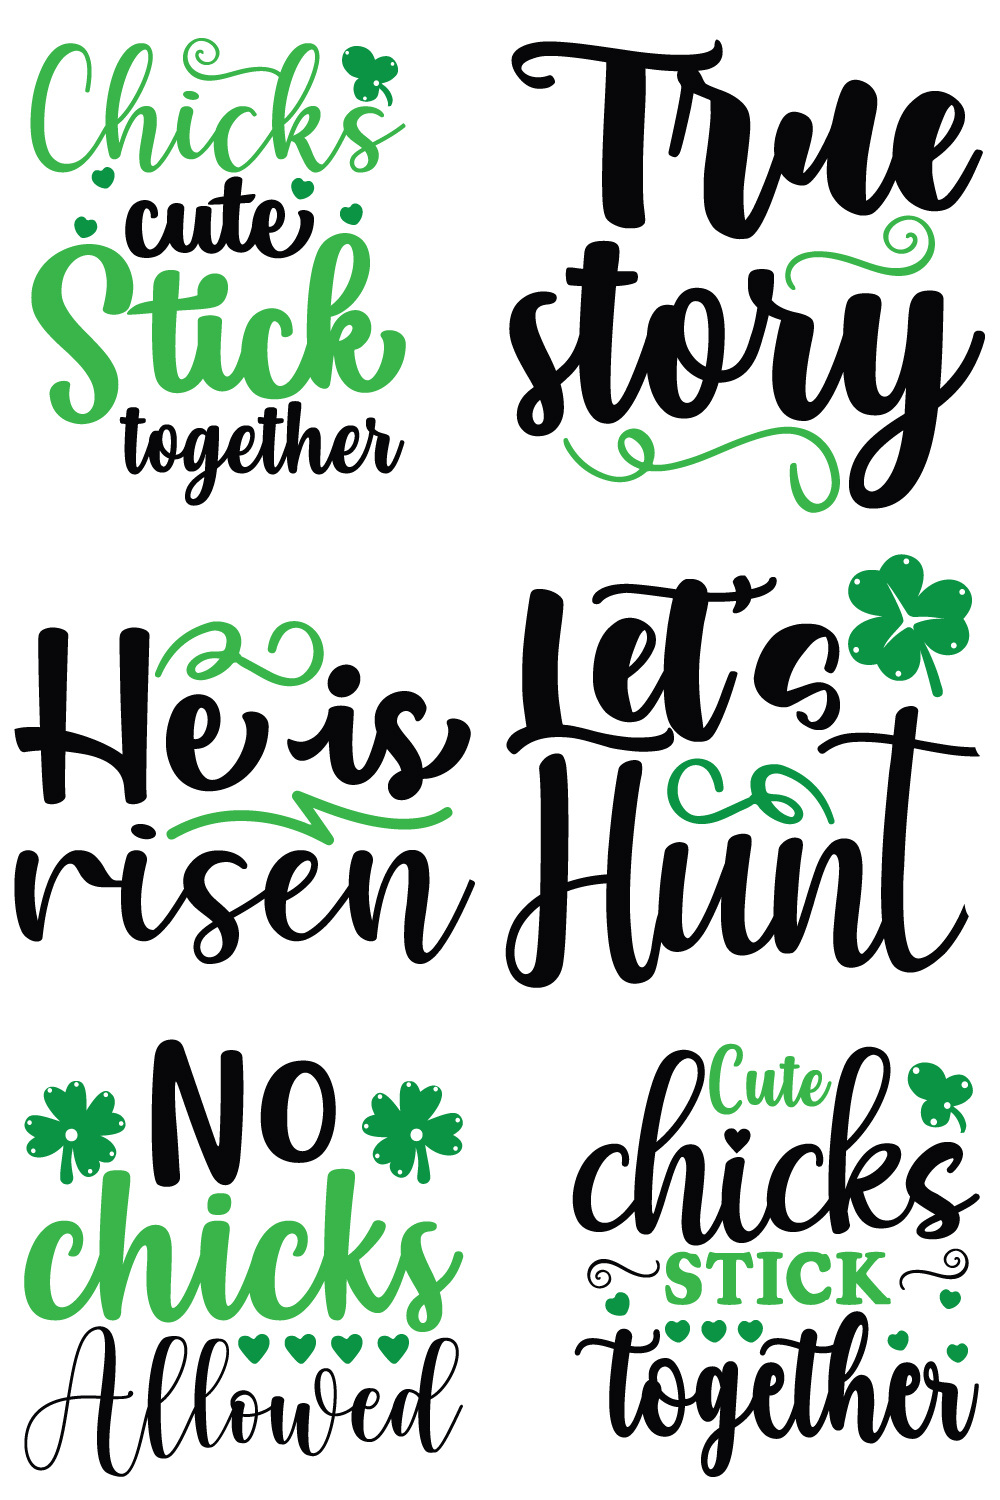 St. Patrick's Day SVG Bundle pinterest image.